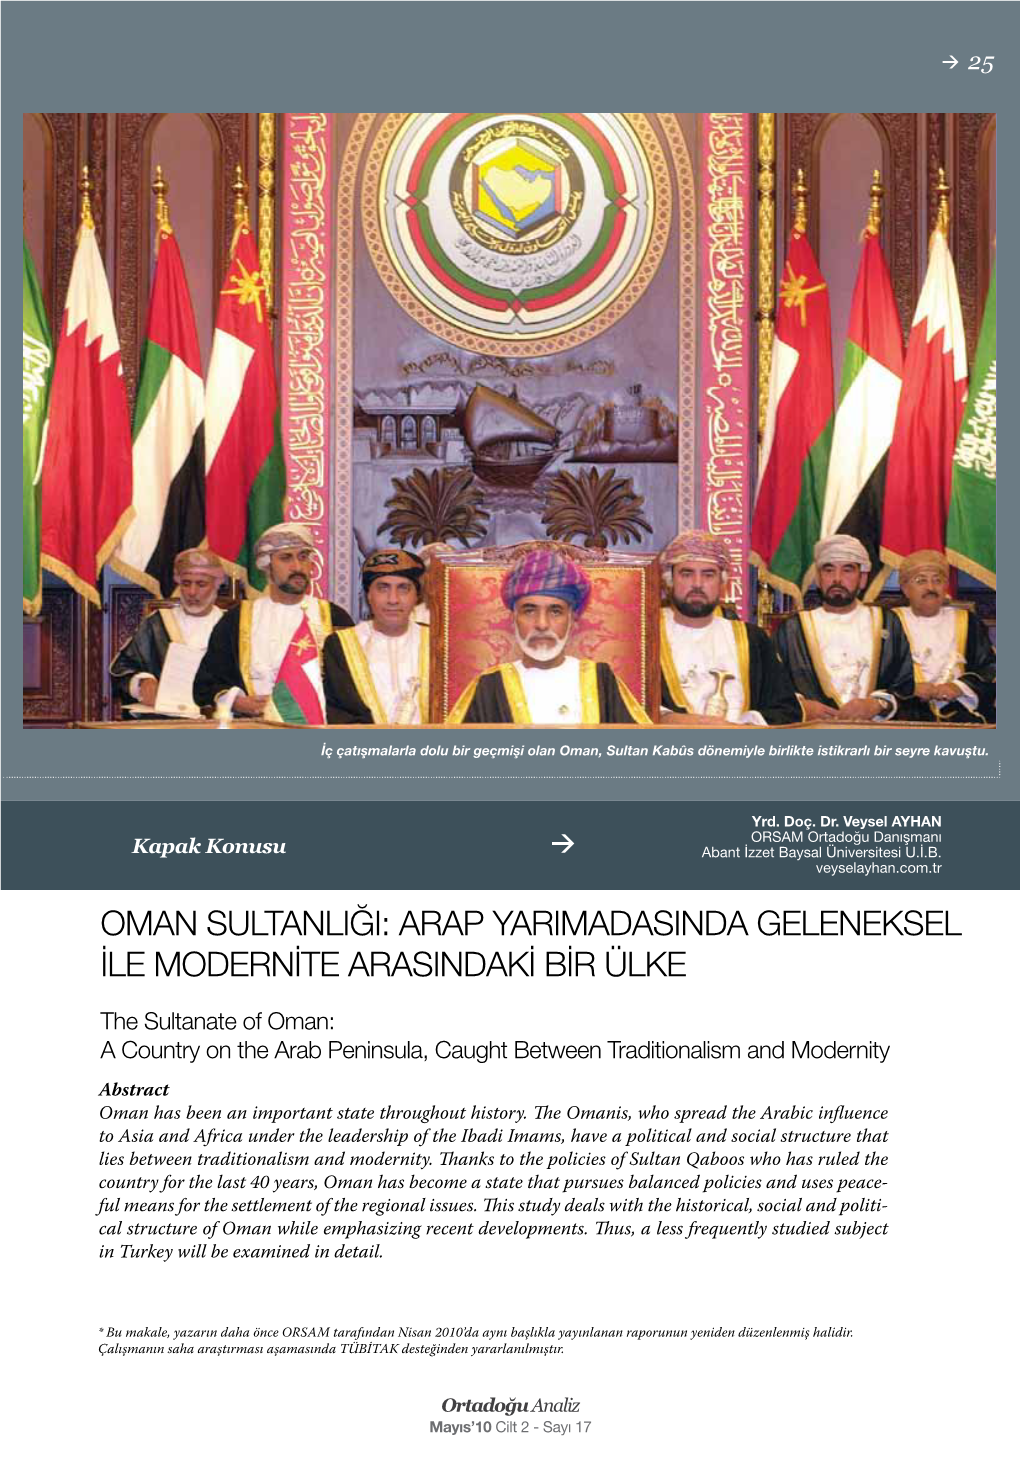 Oman Sultanliği: Arap Yarimadasinda Geleneksel Ile Modernite Arasindaki Bir Ülke